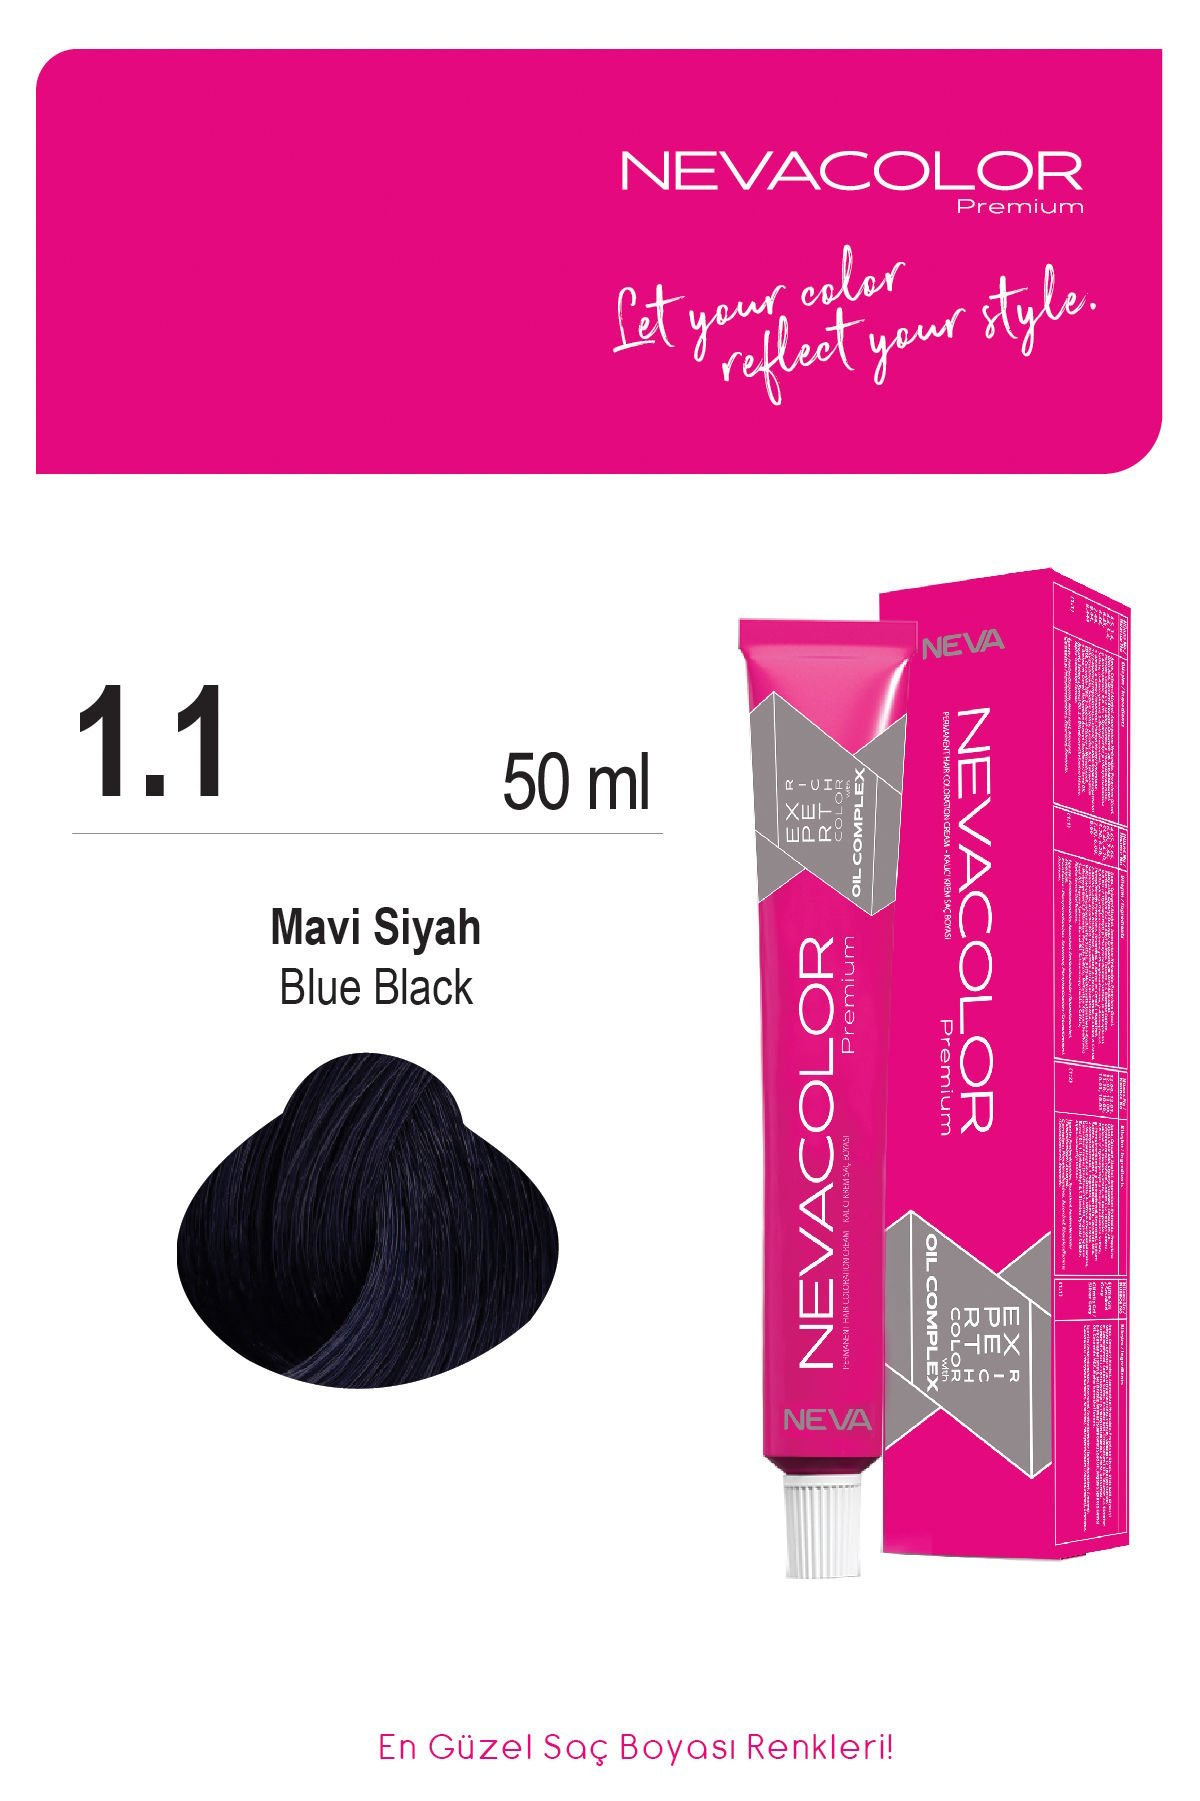 Nevacolor Premium 1.1 Mavi Siyah - Kalıcı Krem Saç Boyası 50 g Tüp